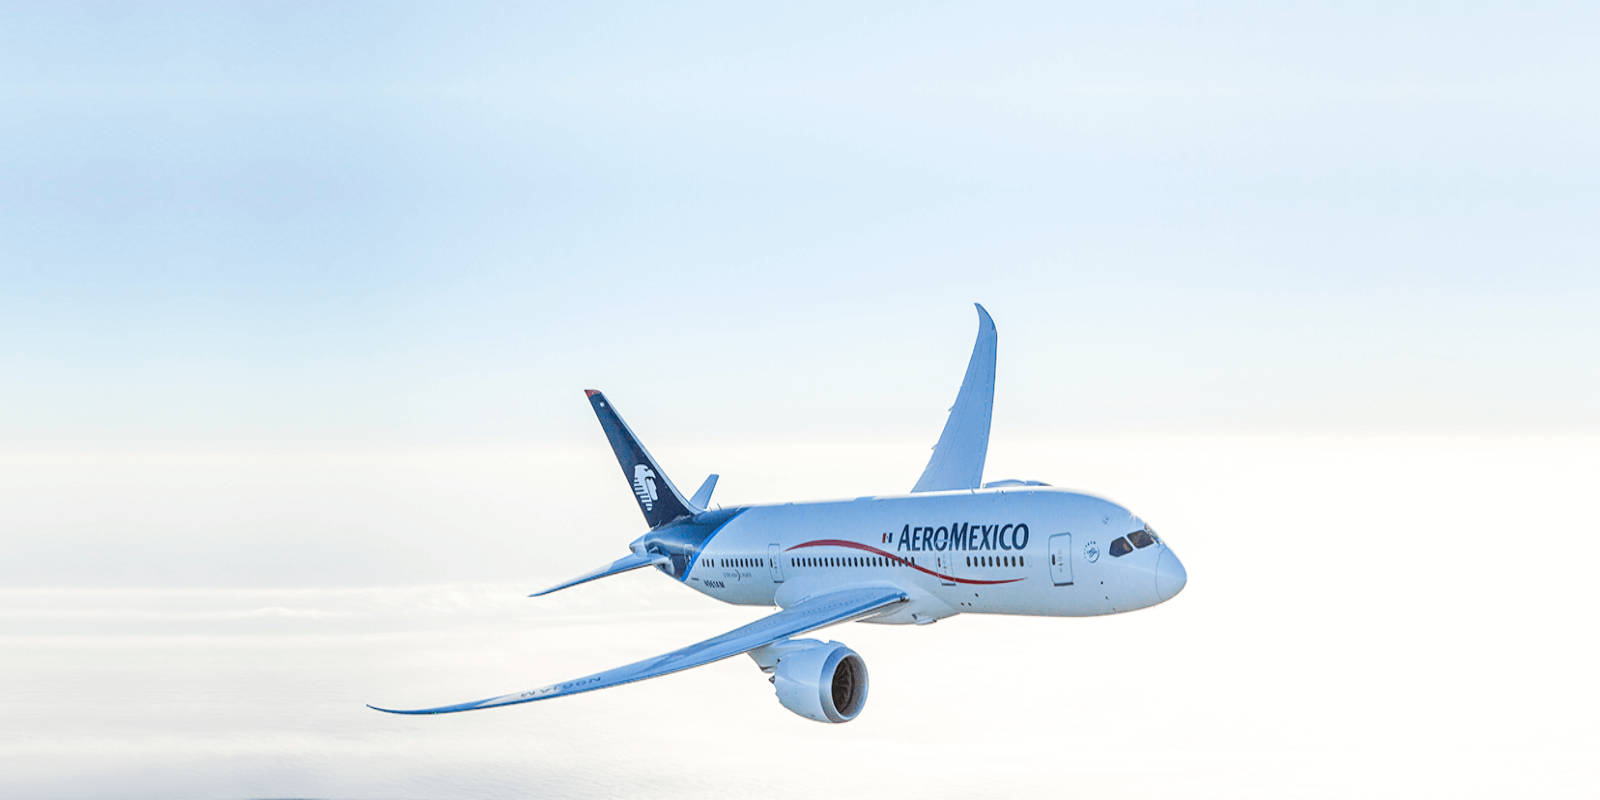 Aeromexico Airline Flyvemaskine Flyvende I Klar Himmel Wallpaper